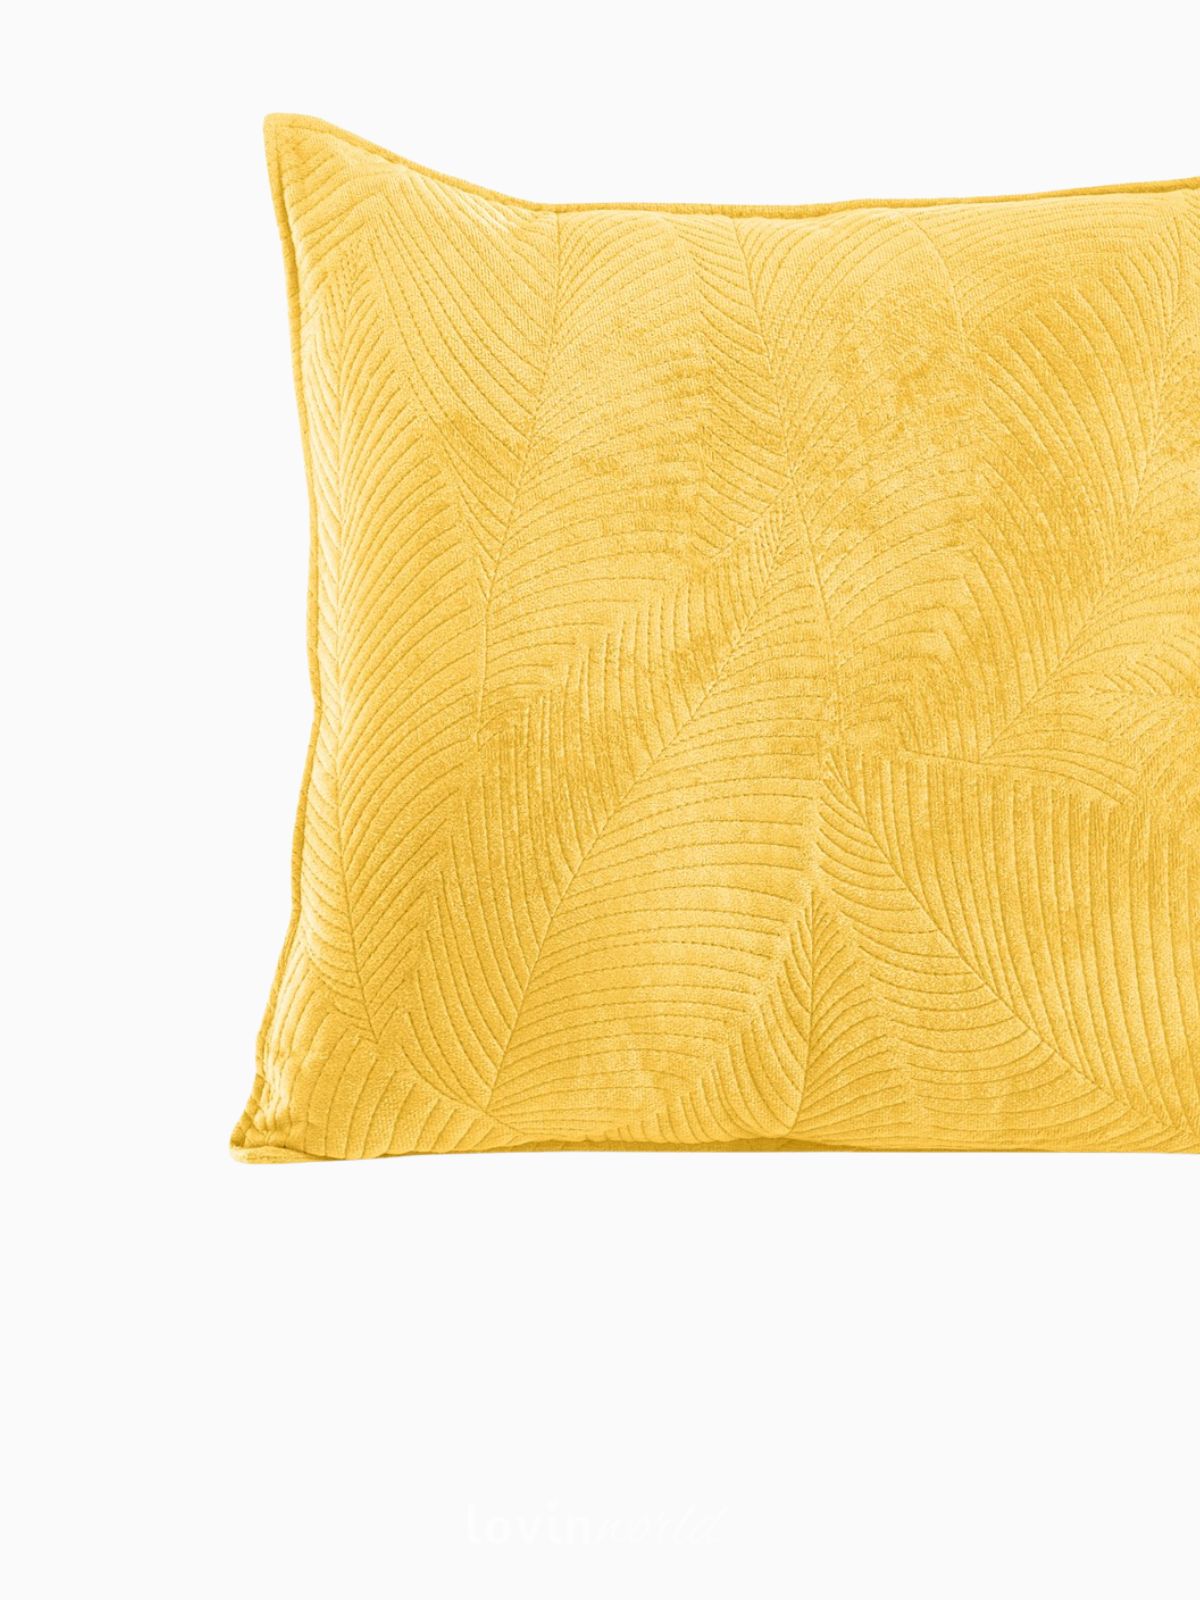 Cuscino decorativo in velluto Palsha, colore giallo 45x45 cm.-4